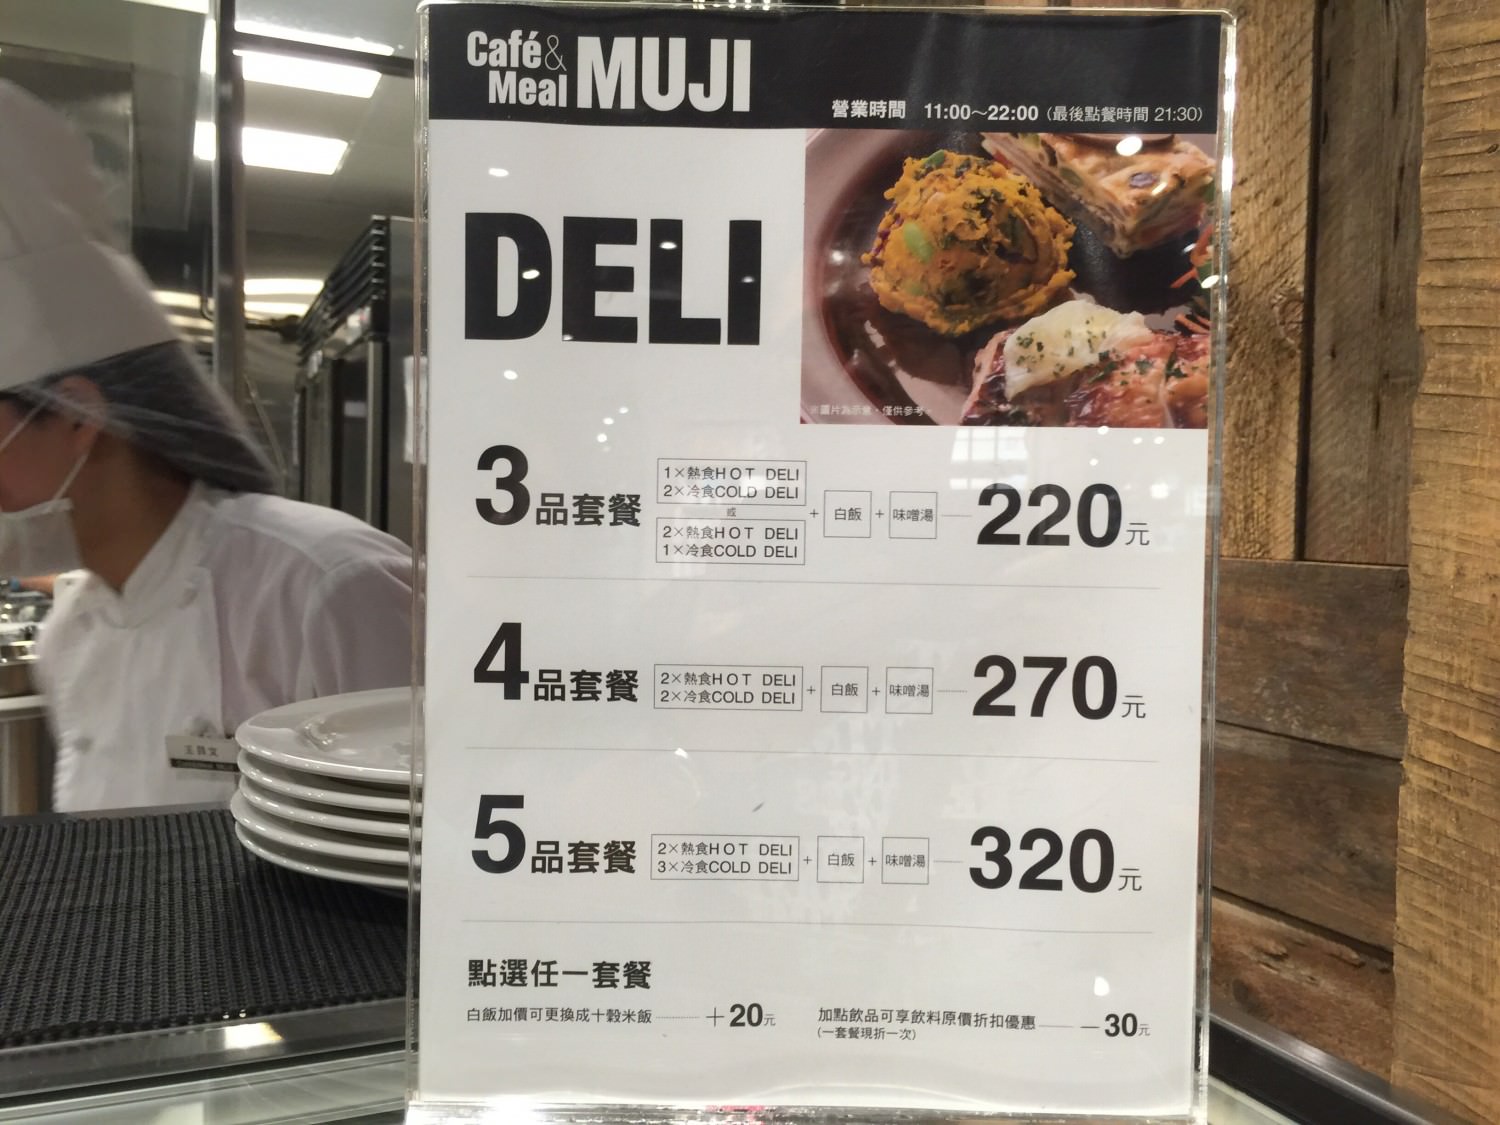 Cafe Meal MUJI 三種不同價格的定食